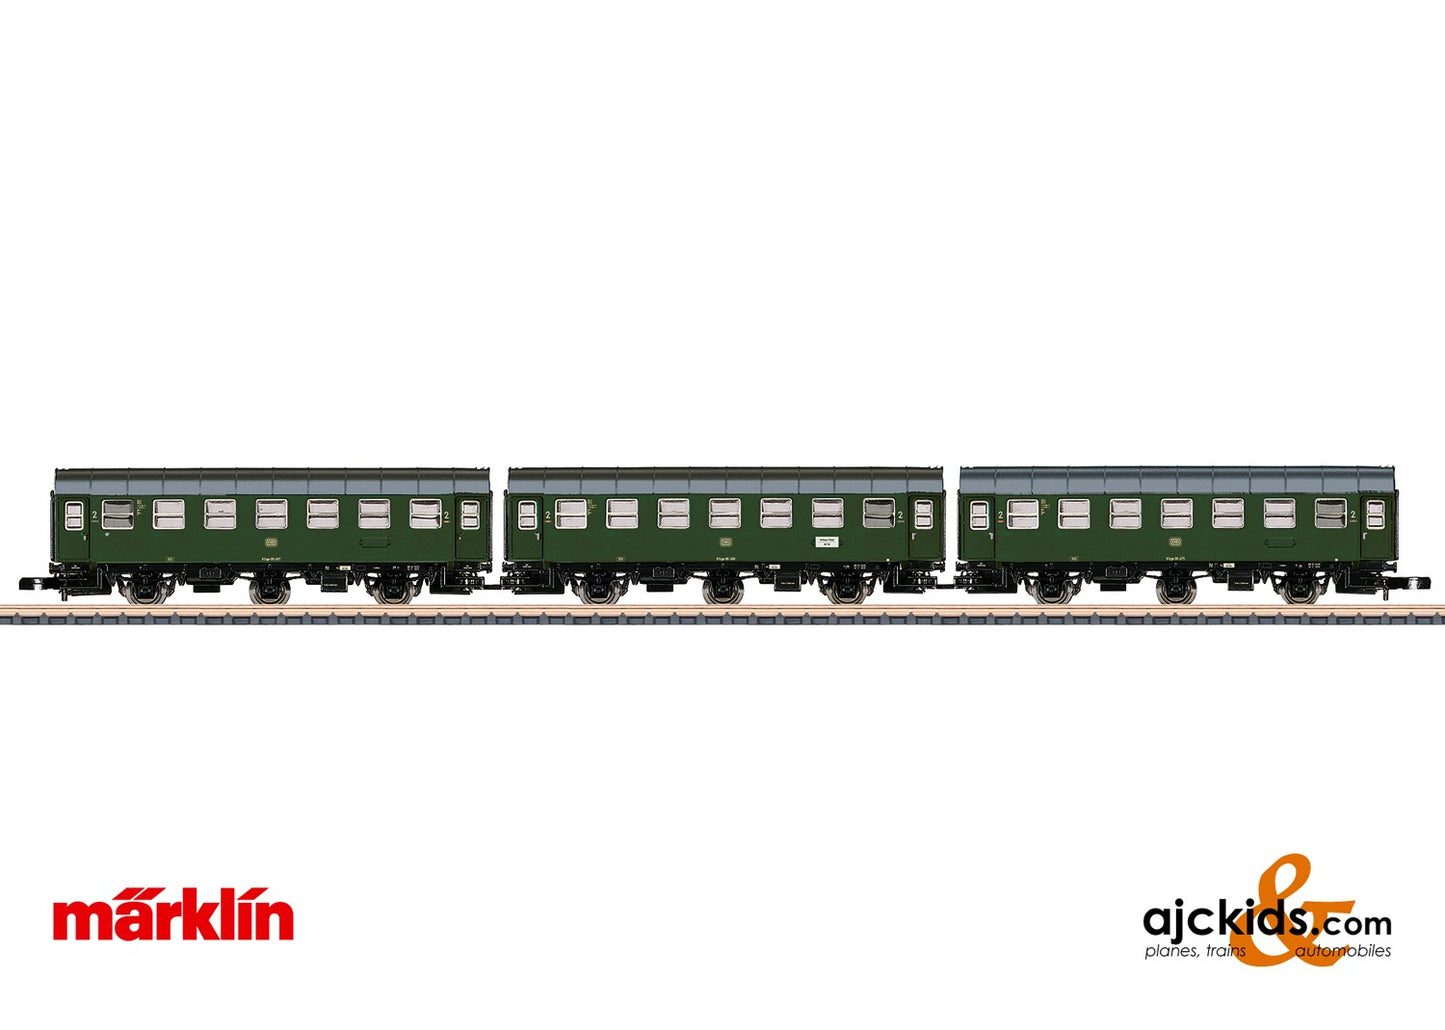 Marklin 87062 - Commuter Car Set, EAN 4001883870625 at Ajckids.com